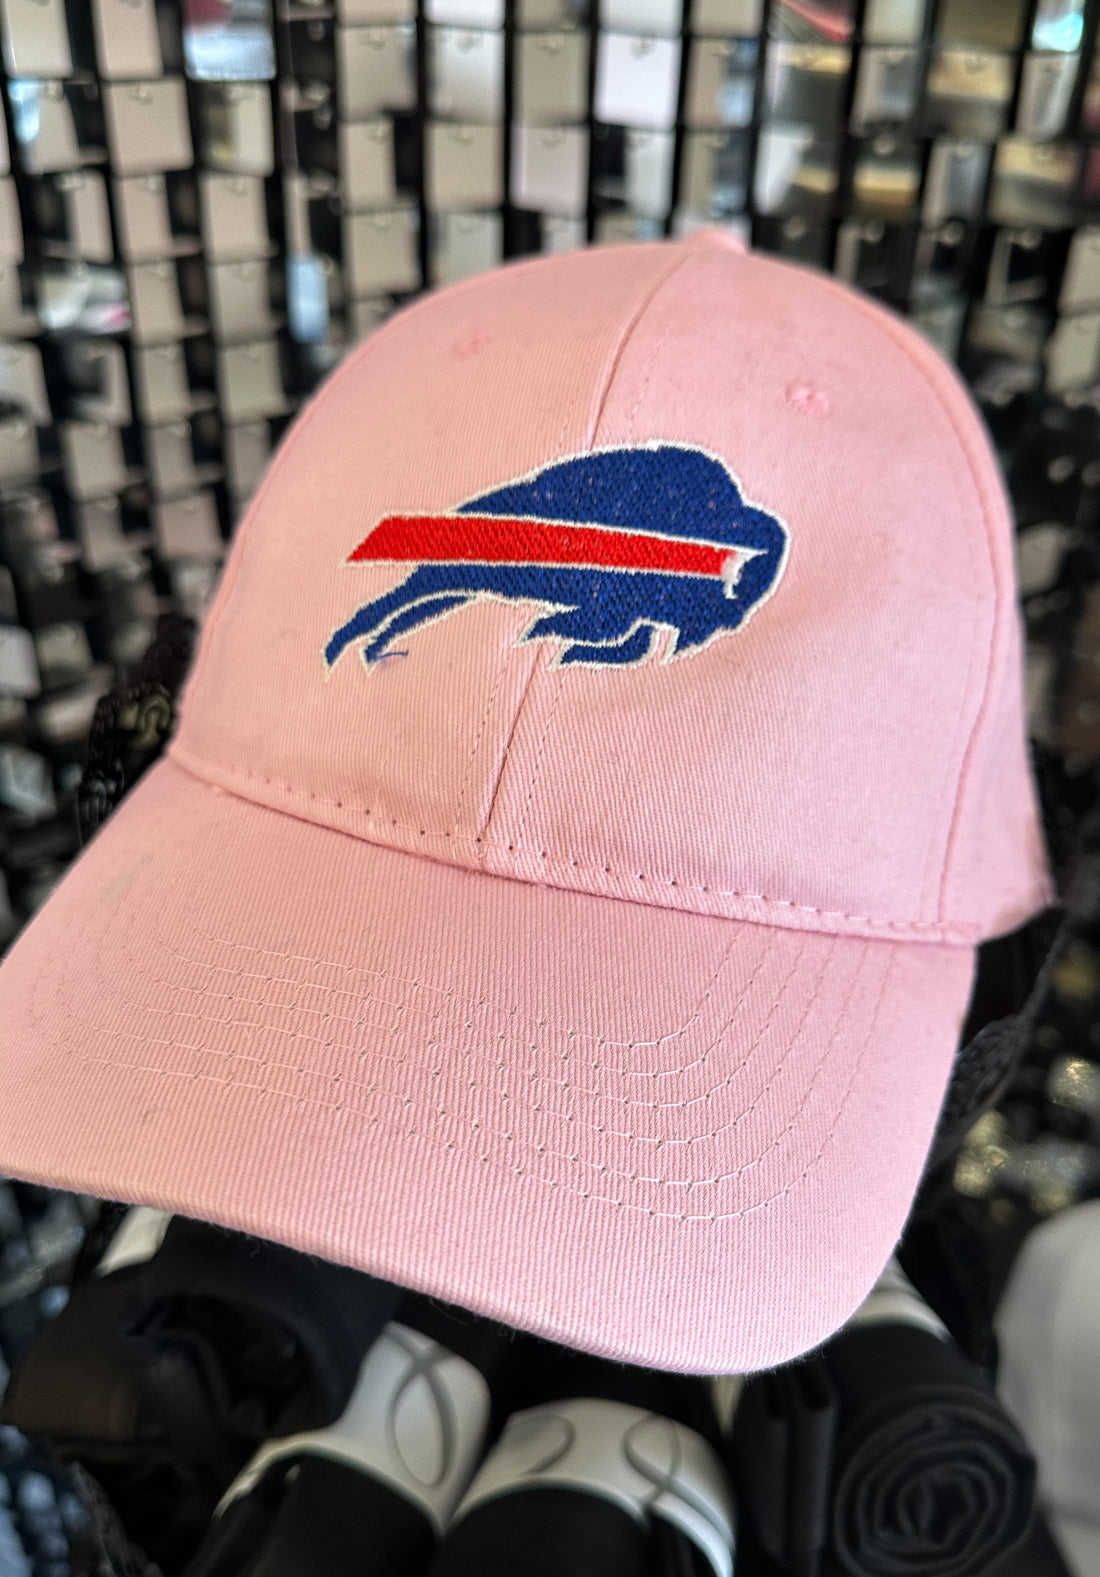 Bills Embroidered hat